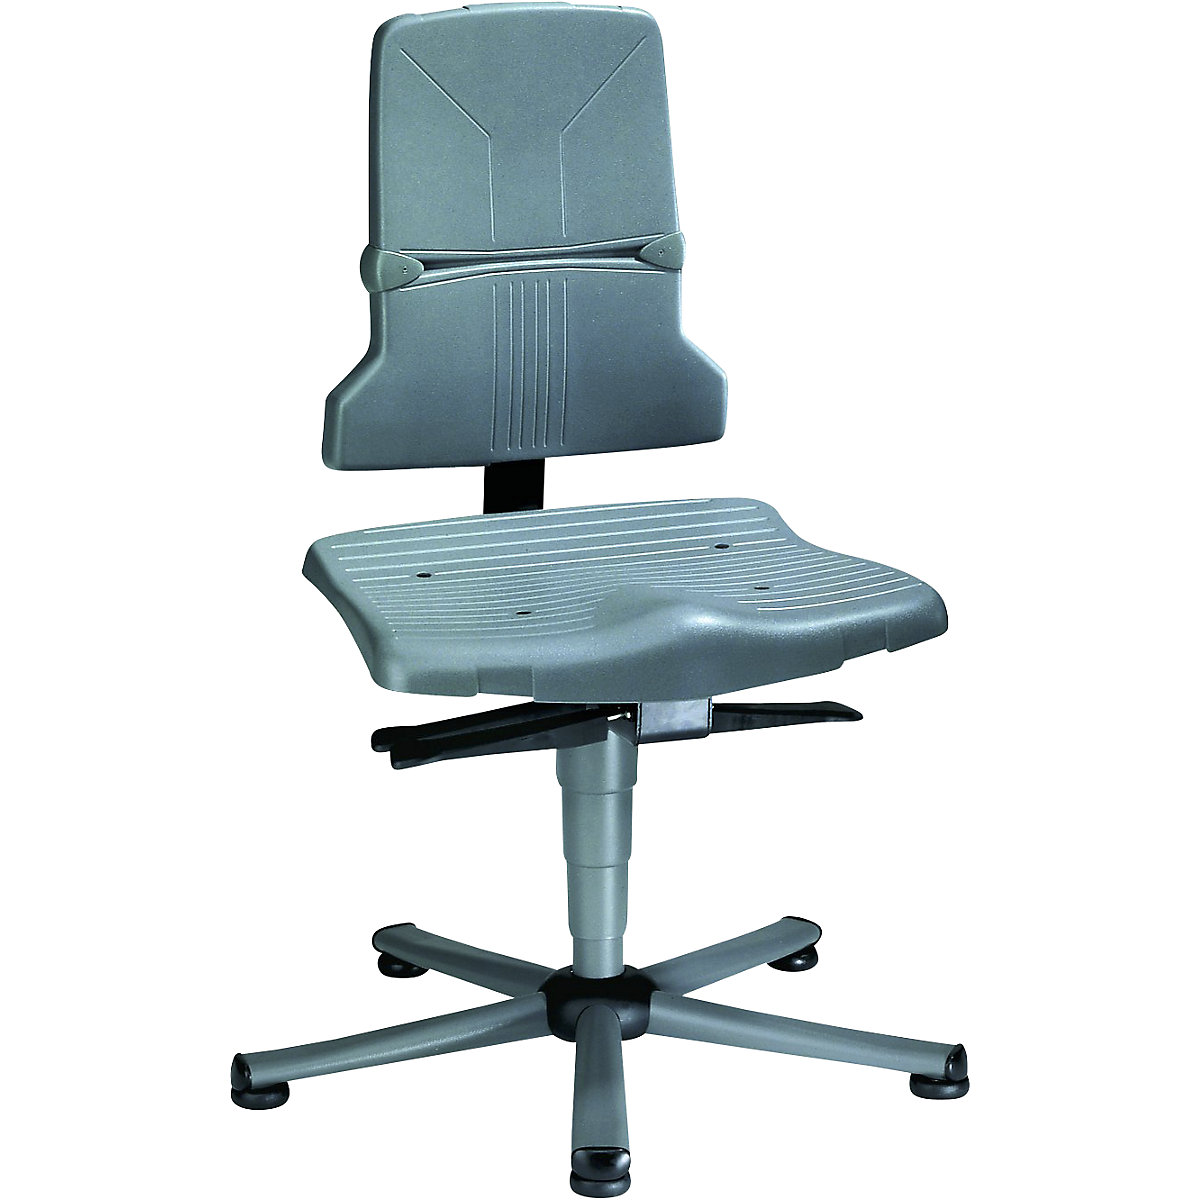 Pracovní otočná židle SINTEC – bimos, permanentní kontakt, přestavování sklonu sedáku, podstavec z ocelové trubky s pěti nohami s podlahovými patkami-6